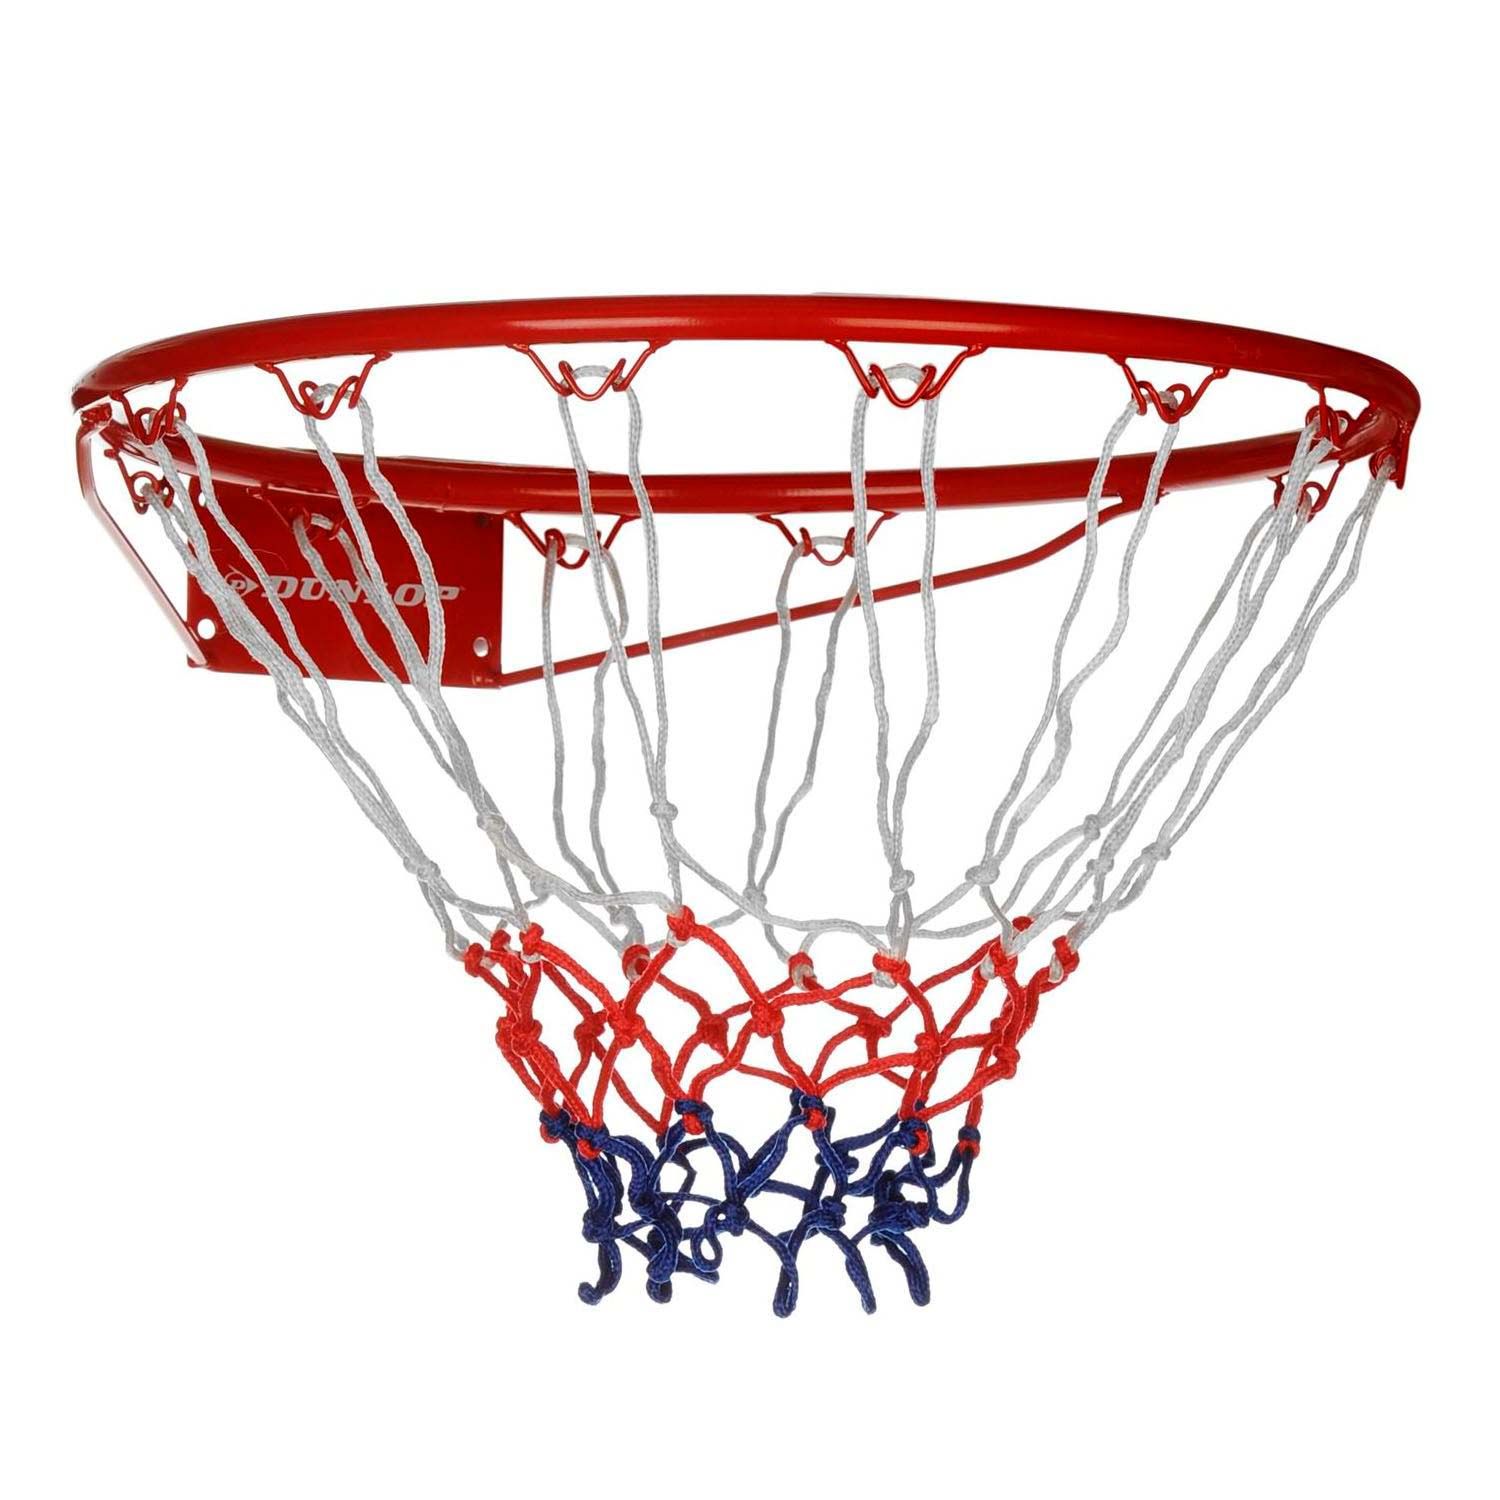 poll Diakritisch Buik Dunlop basketball hoop with Net | Thimble Toys